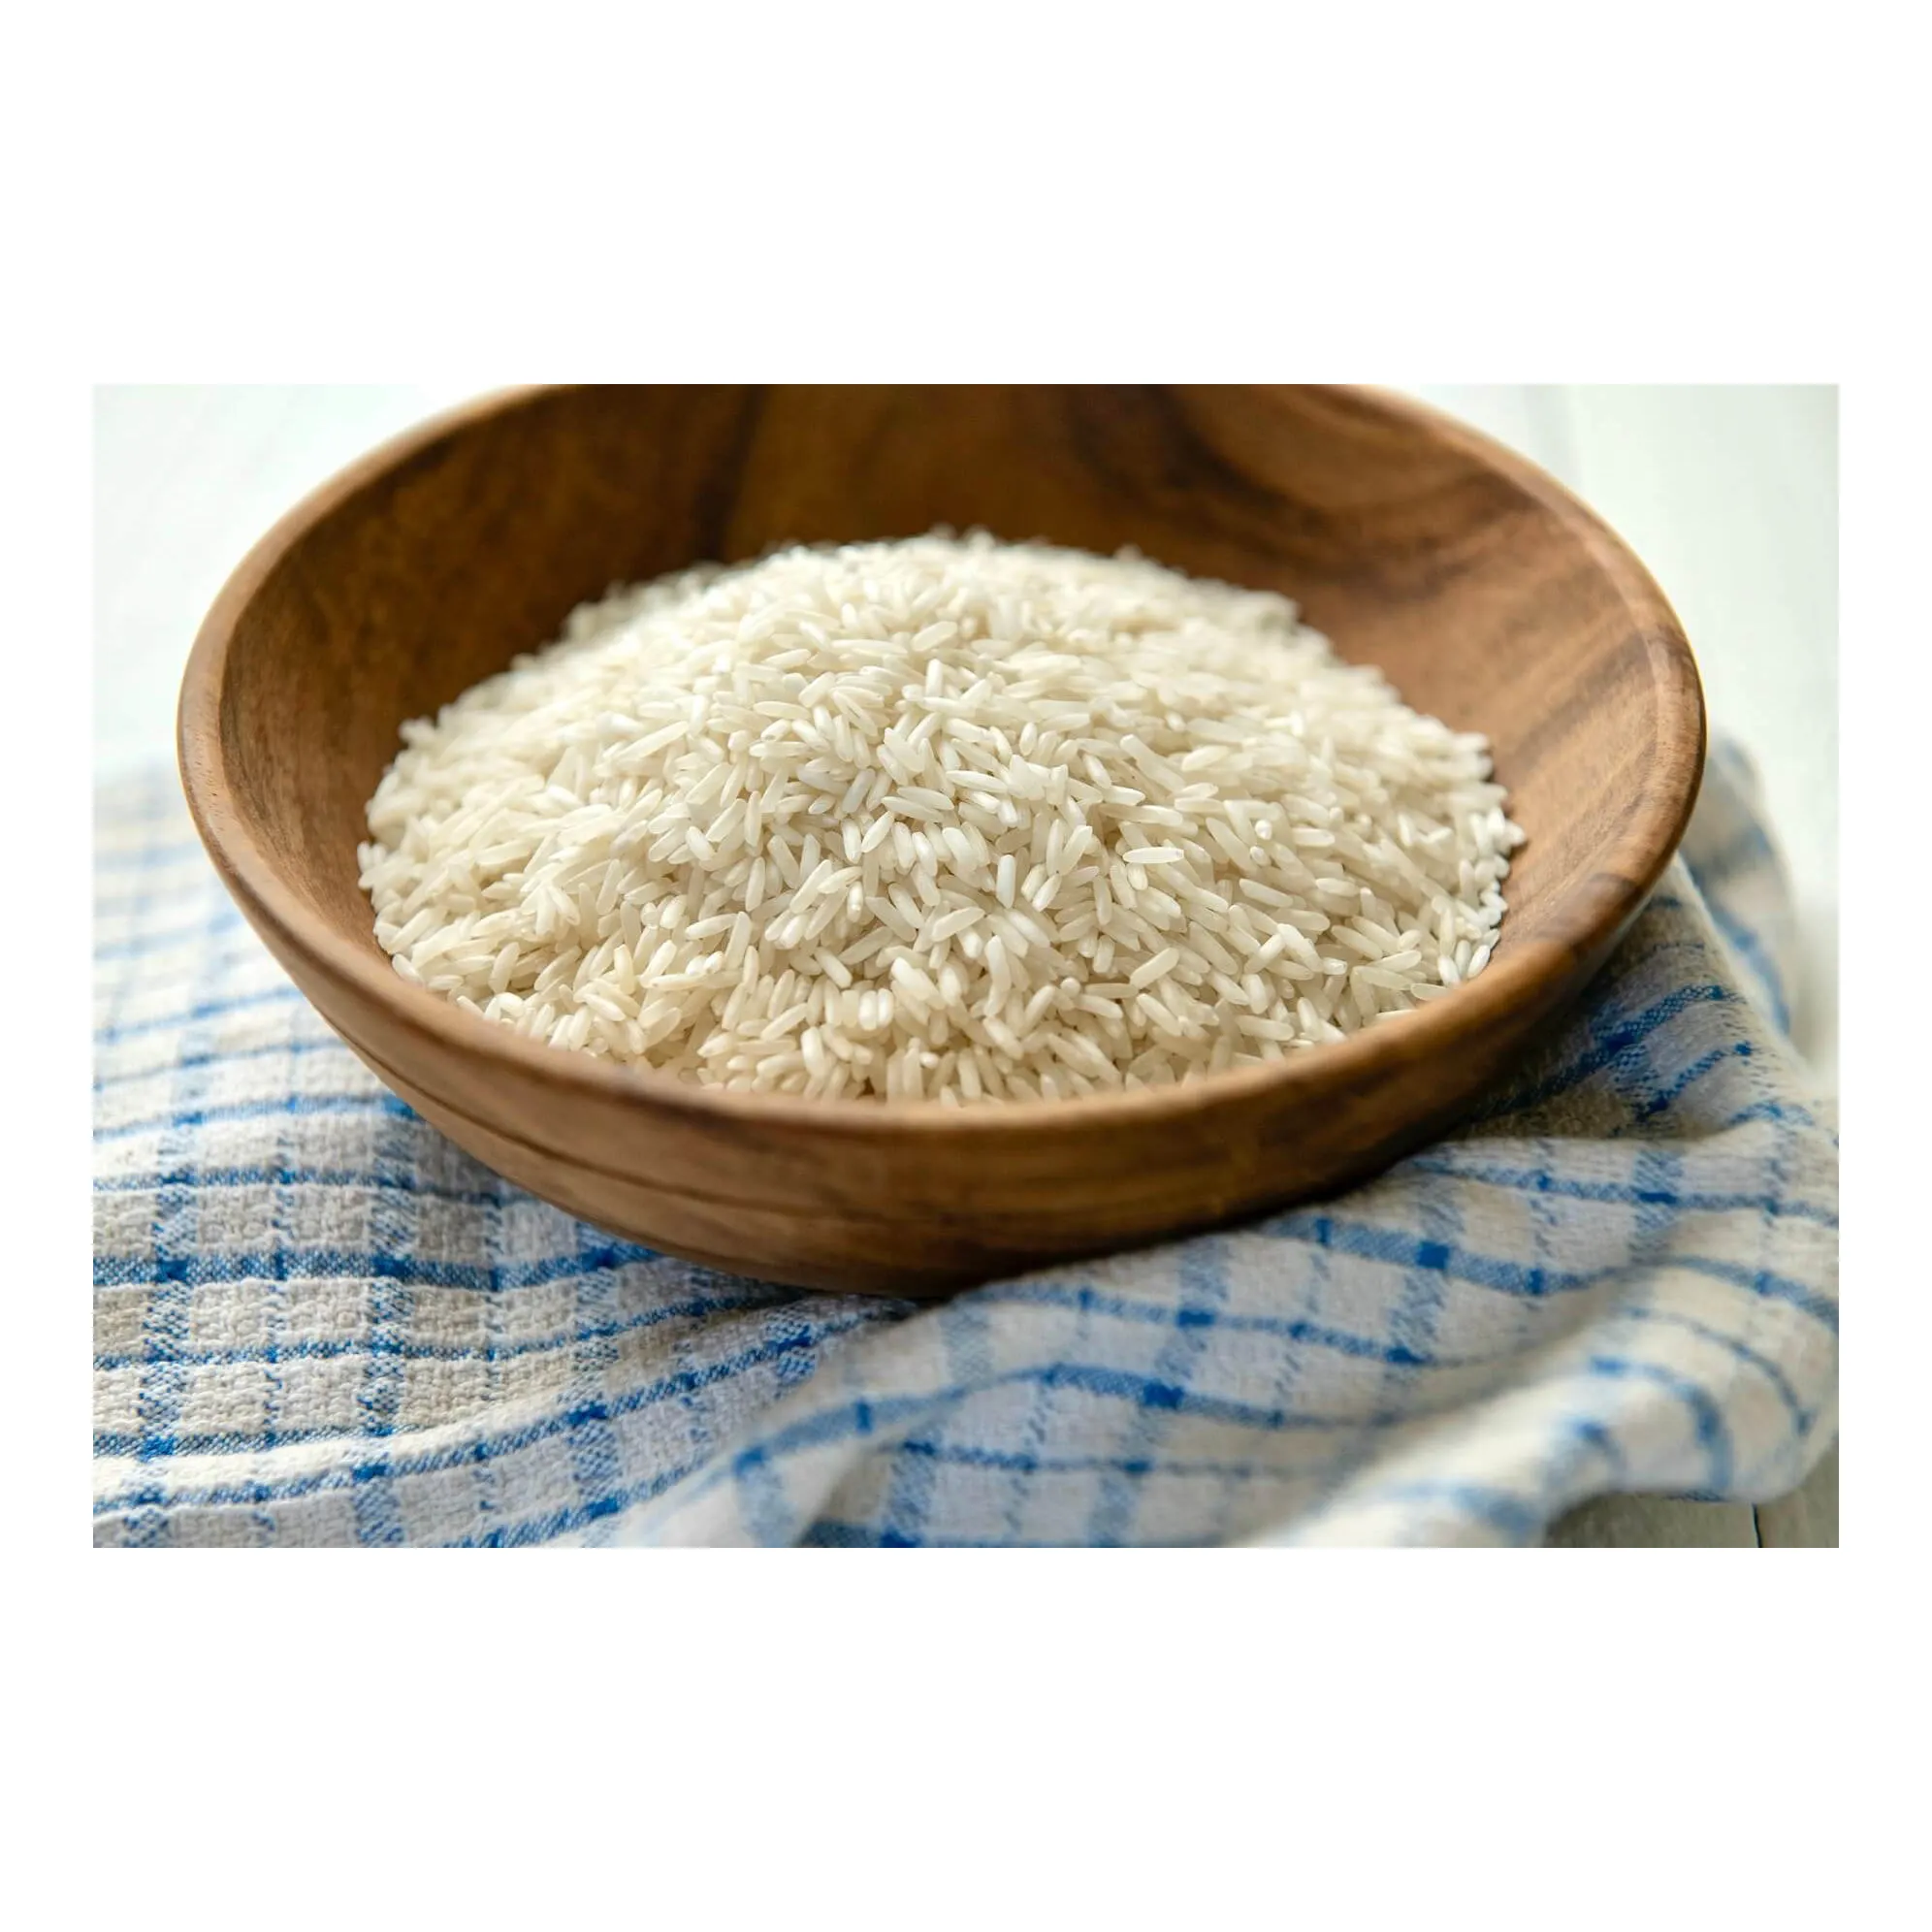 أرز بسماتي سلالة 1121 عالي الجودة للبيع بالجملة / أرز بني طويل الحبوب 5% أرز أبيض مكسور، أرز هندي طويل الحبوب بالجلي، أرز ياسمين